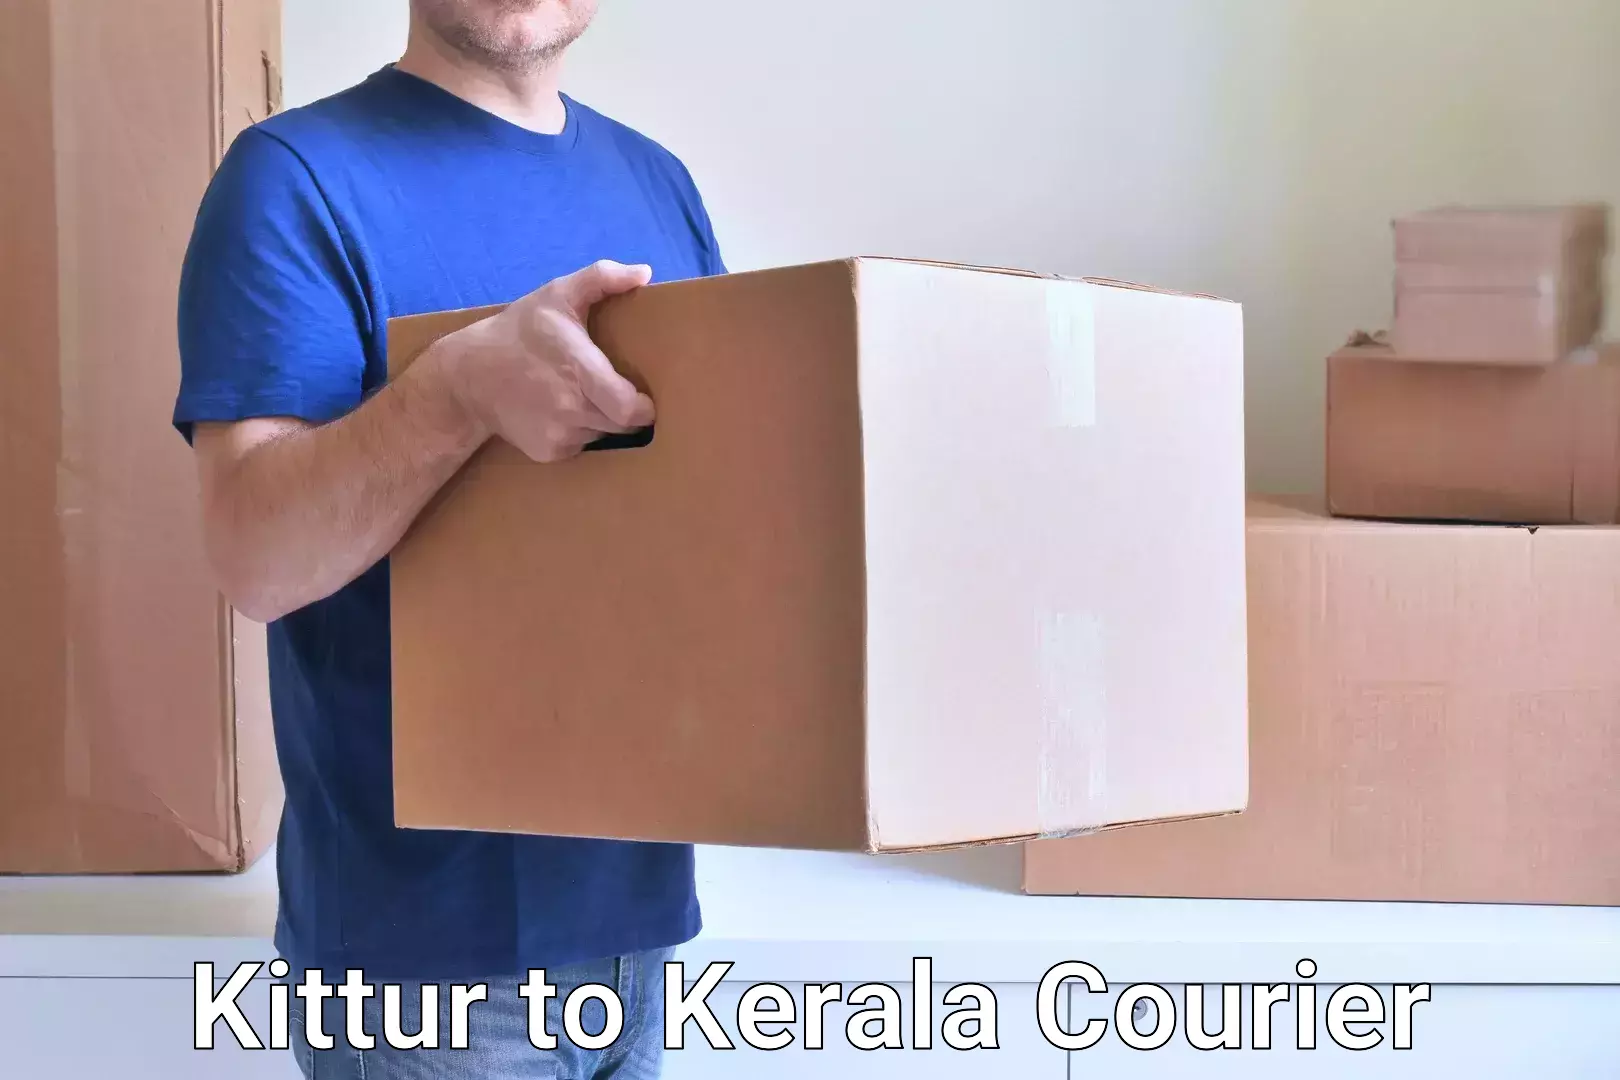 E-commerce logistics support Kittur to Kerala